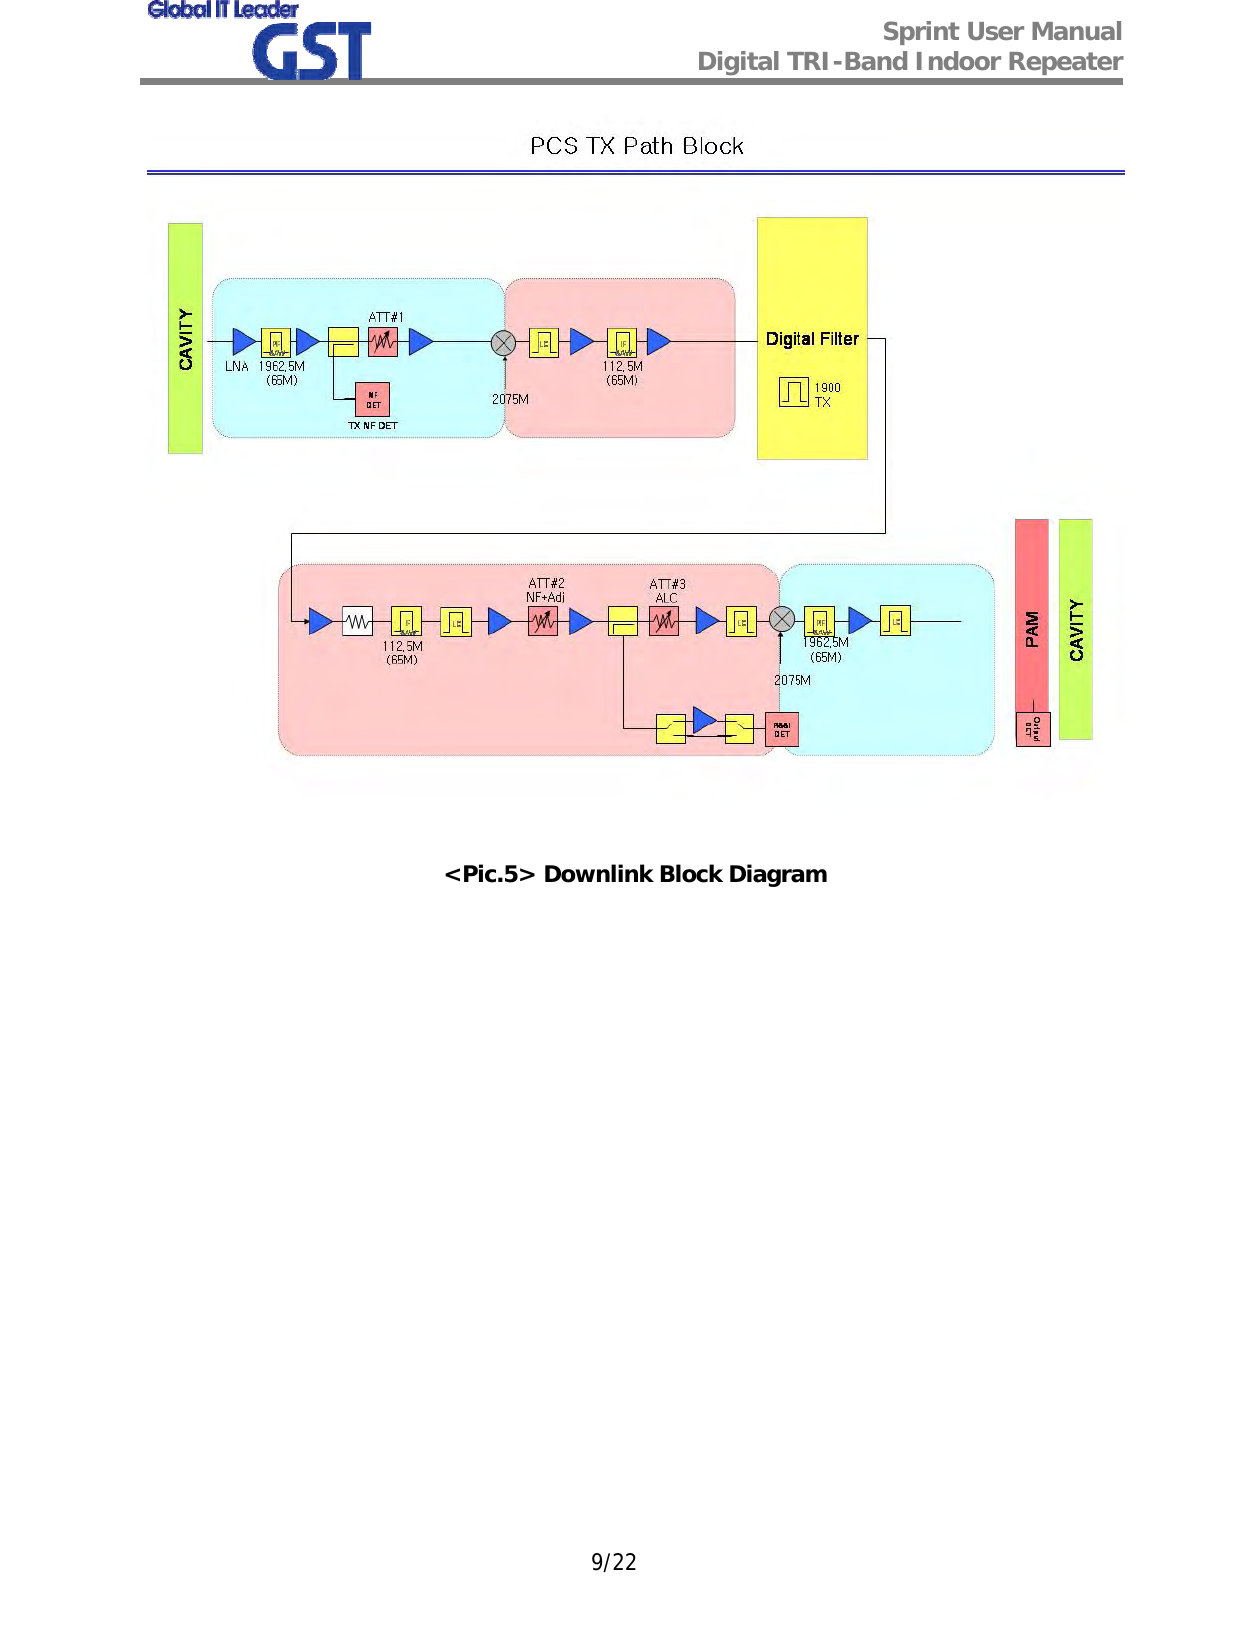  Sprint User Manual Digital TRI-Band Indoor Repeater   9/22  &lt;Pic.5&gt; Downlink Block Diagram 